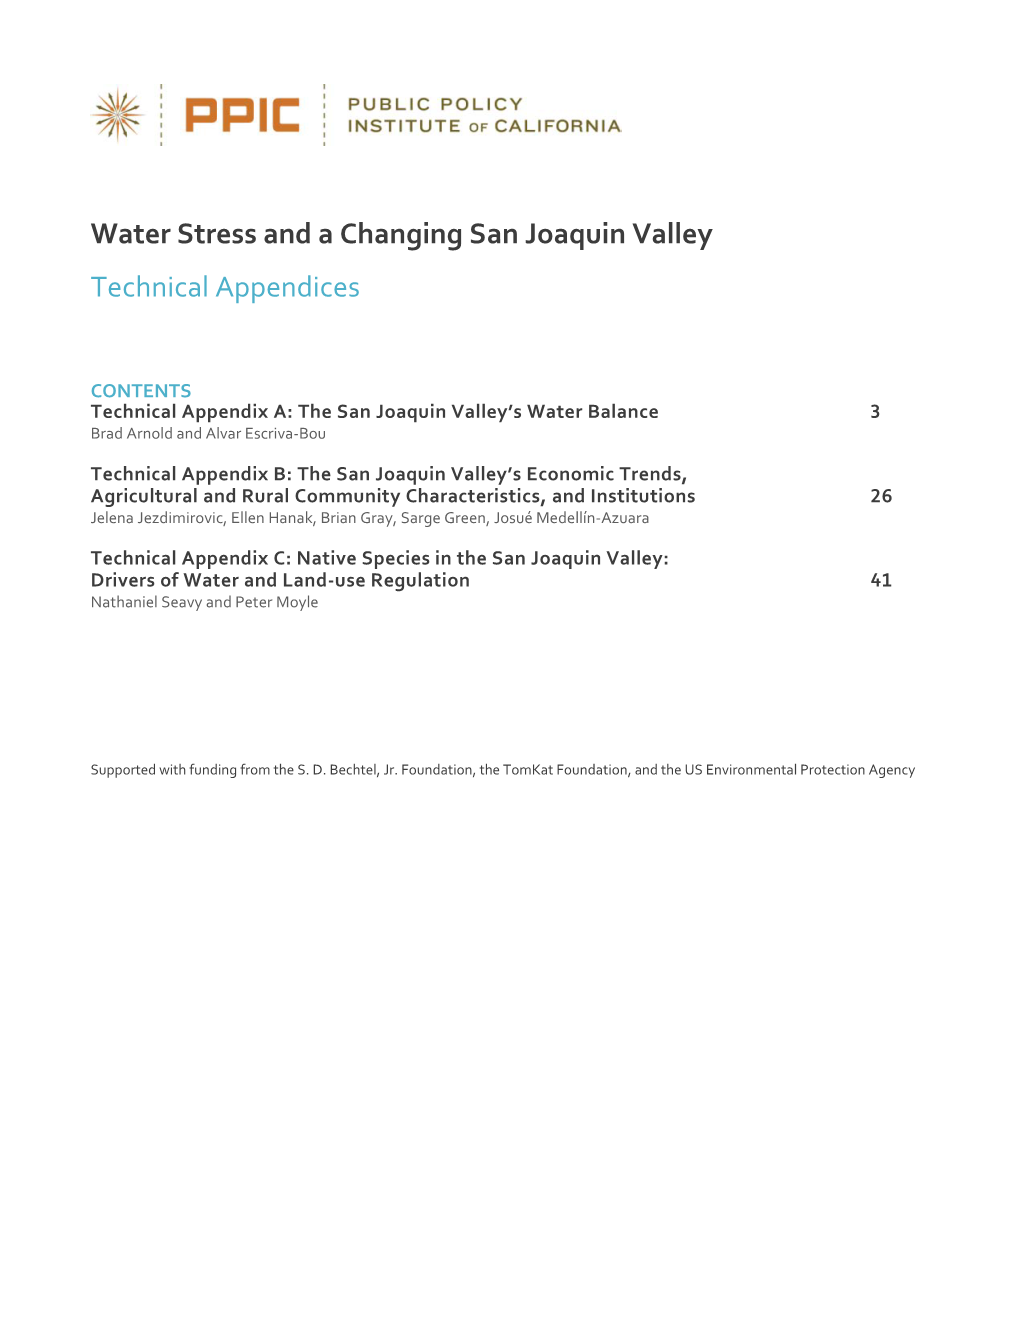 Technical Appendix A: the San Joaquin Valley’S Water Balance 3 Brad Arnold and Alvar Escriva-Bou